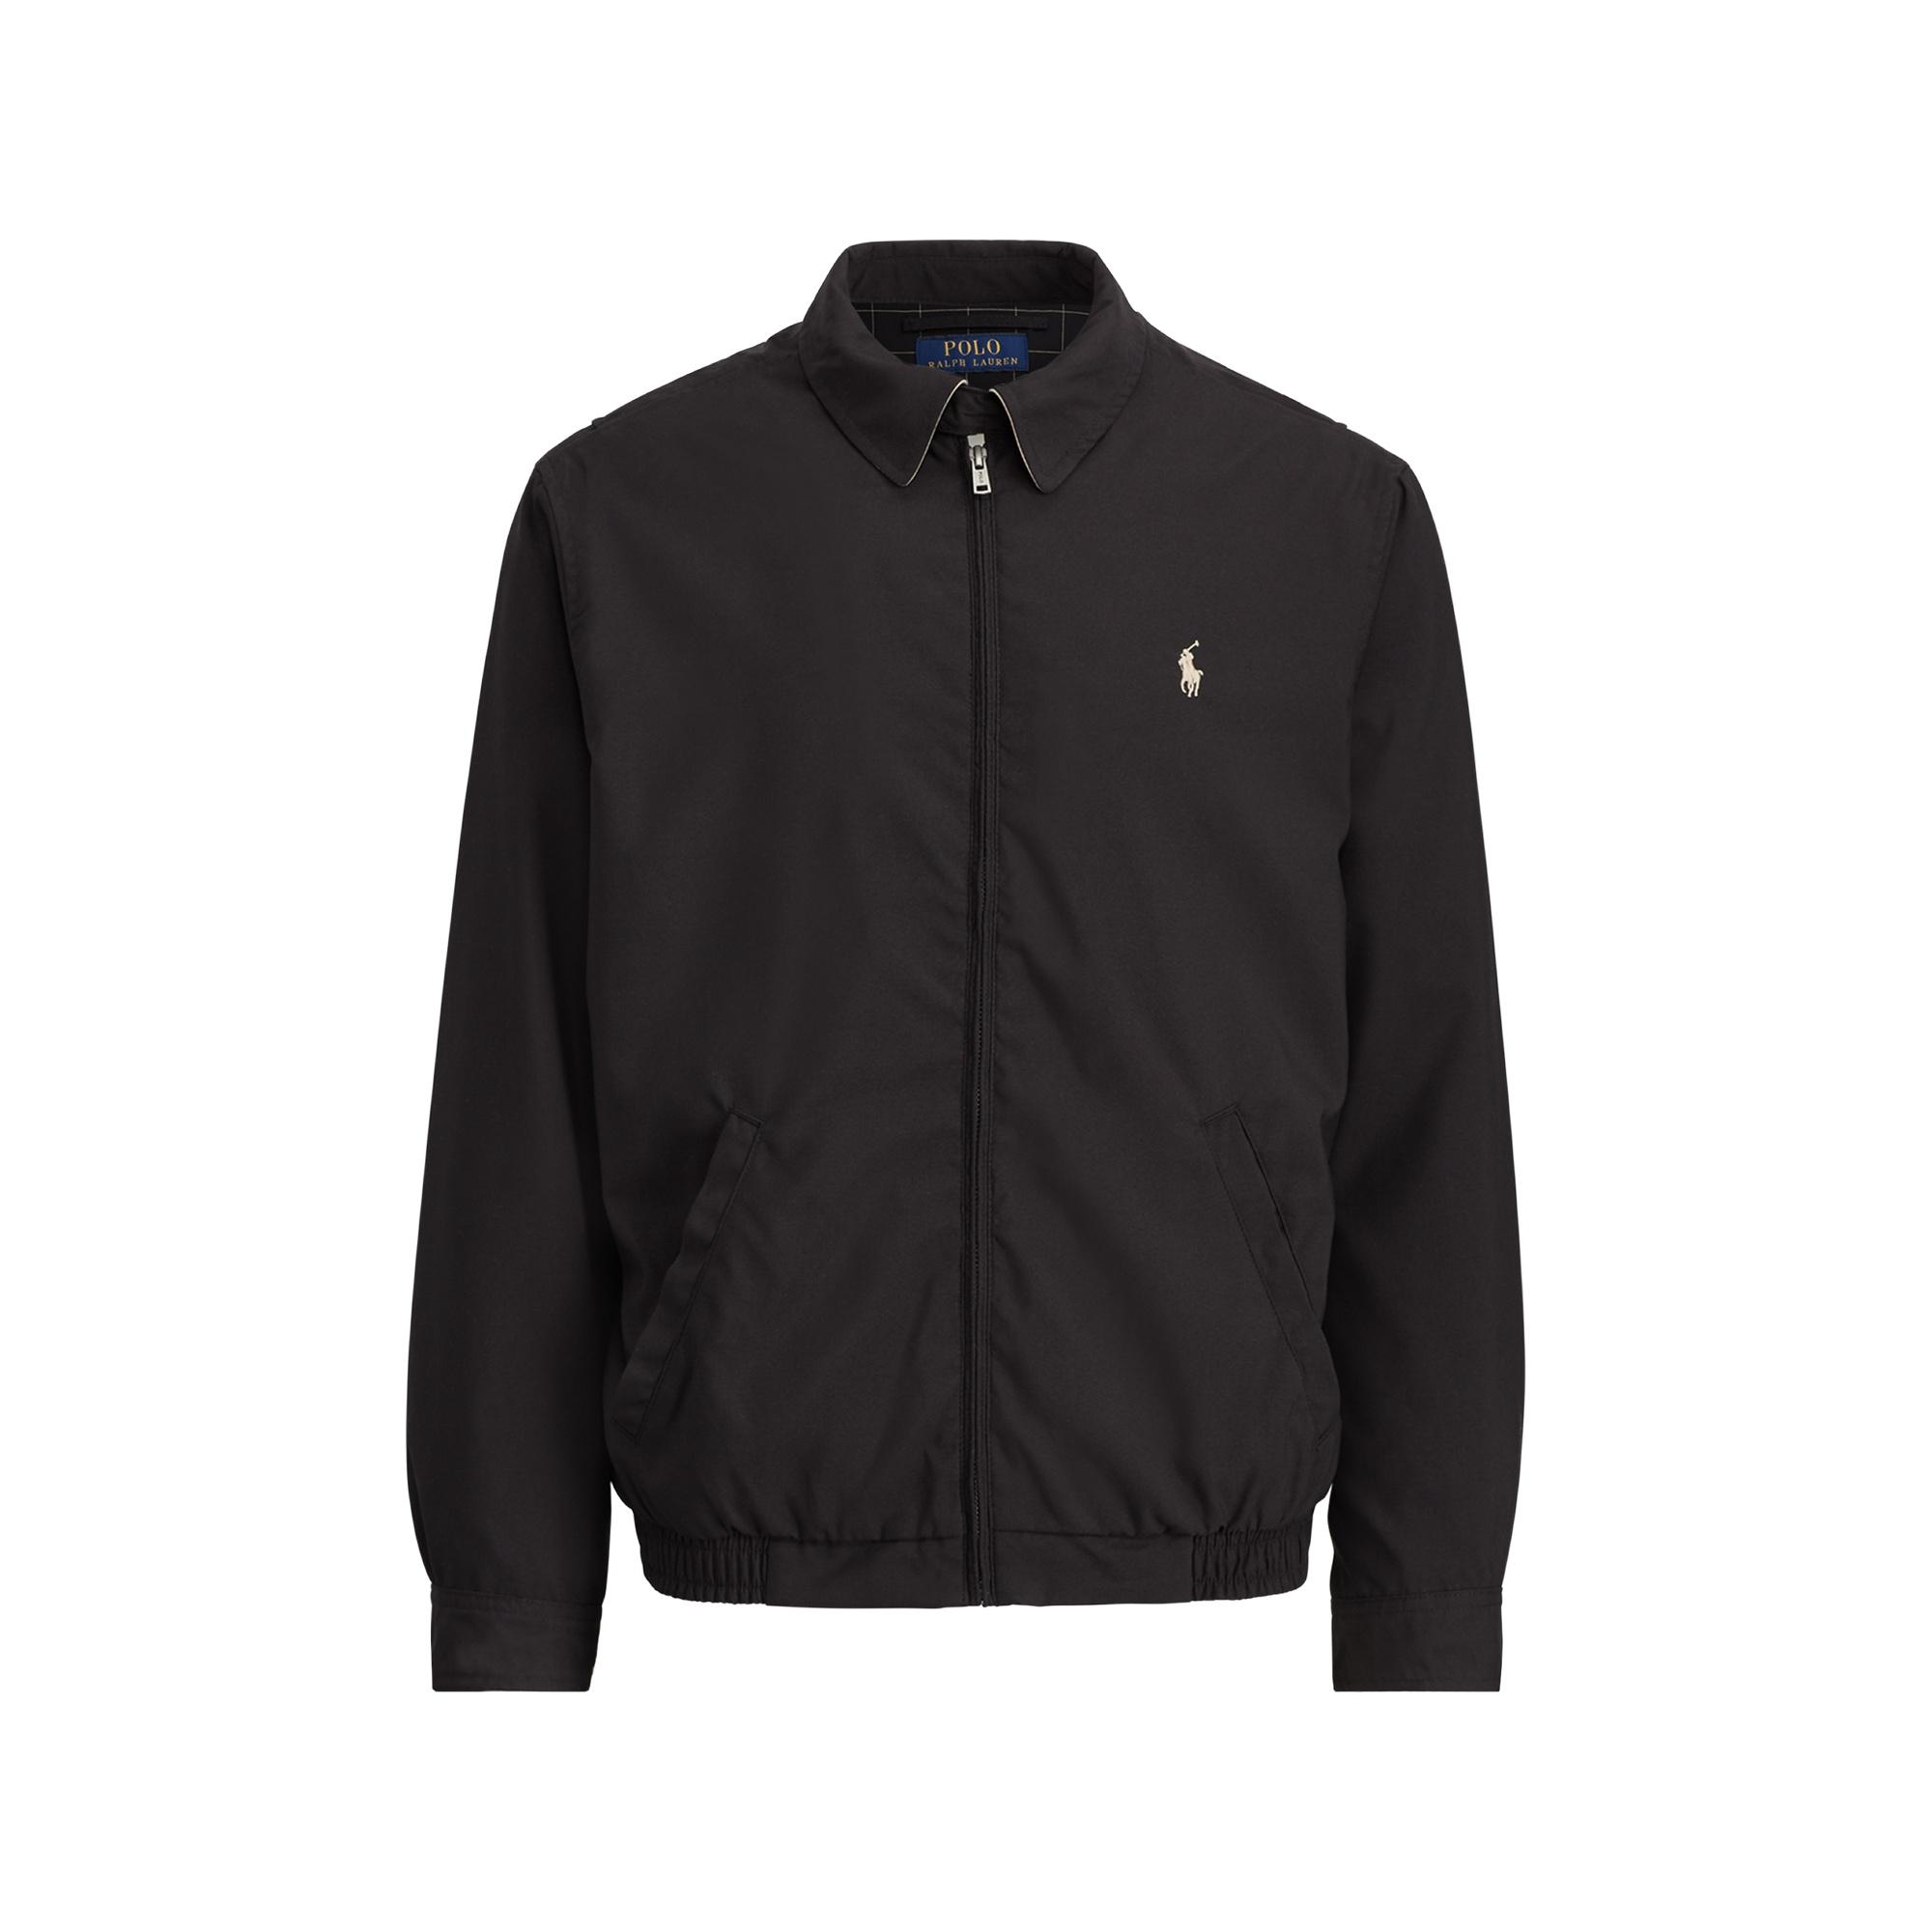 Polo Ralph Lauren Denim Bi-swing Jacket in rl Black (Black) for Men - Lyst